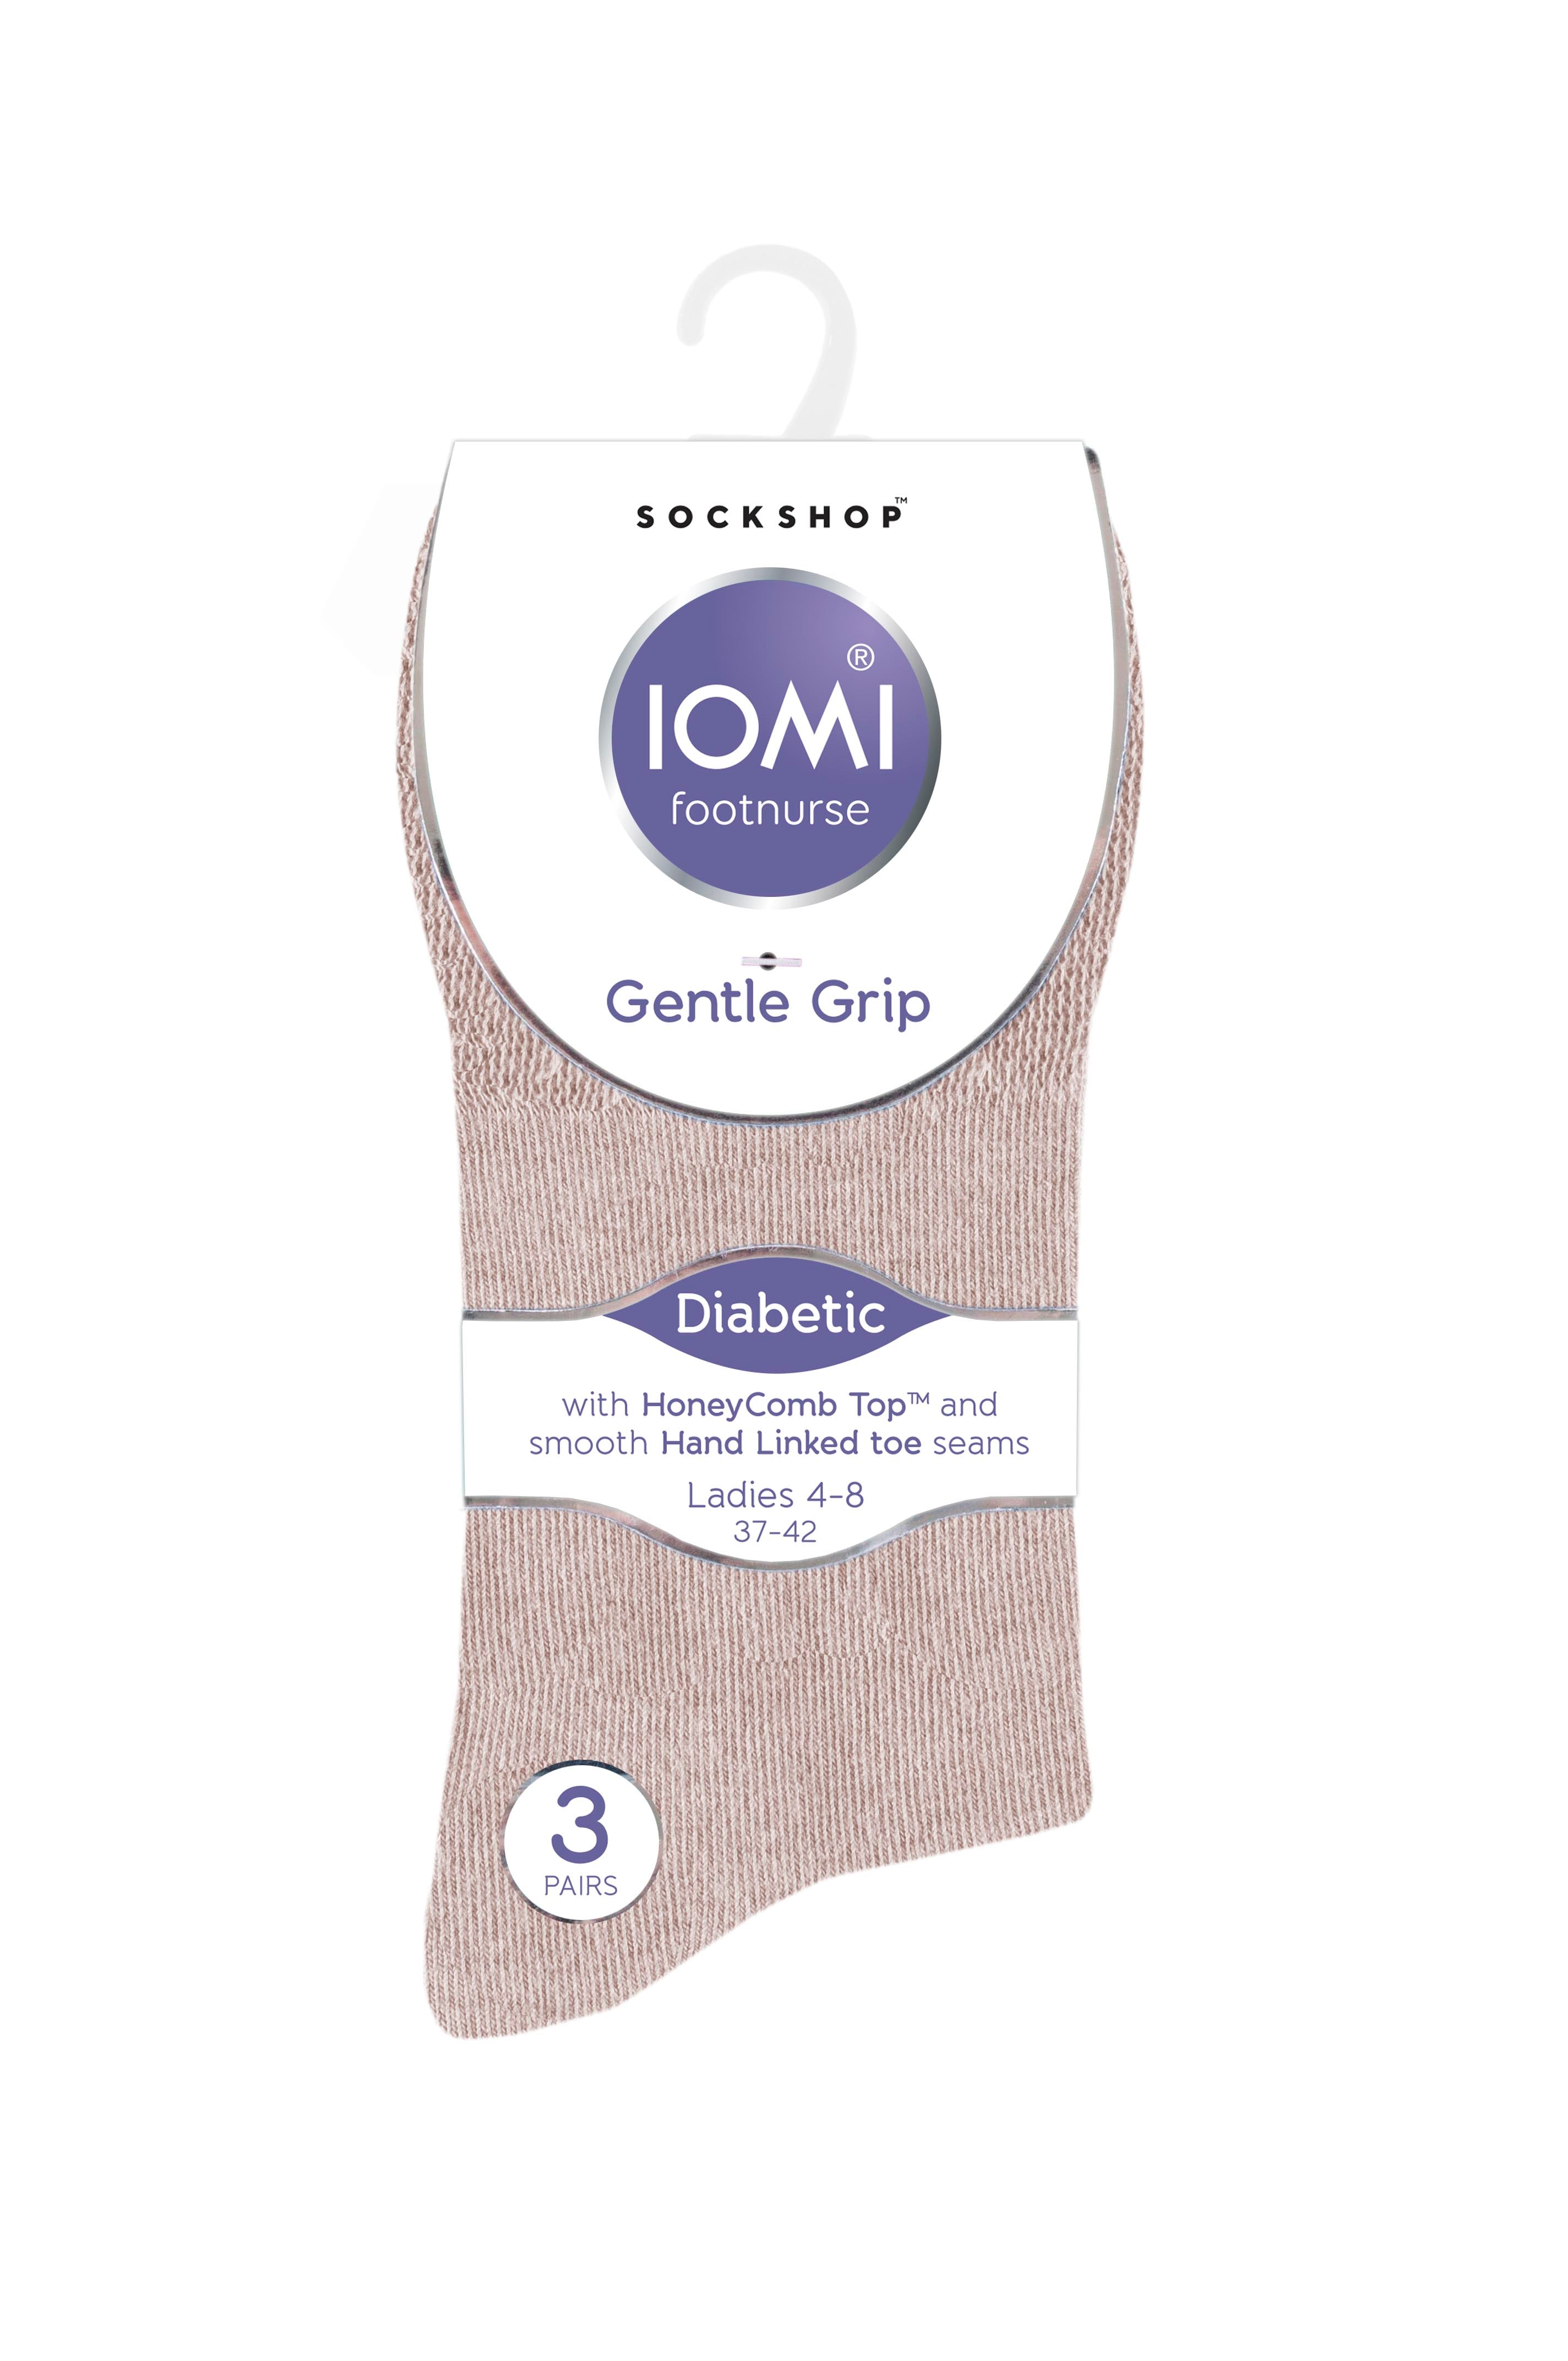 6 Pairs Ladies IOMI FootNurse Gentle Grip Diabetic Socks - Natural Mix